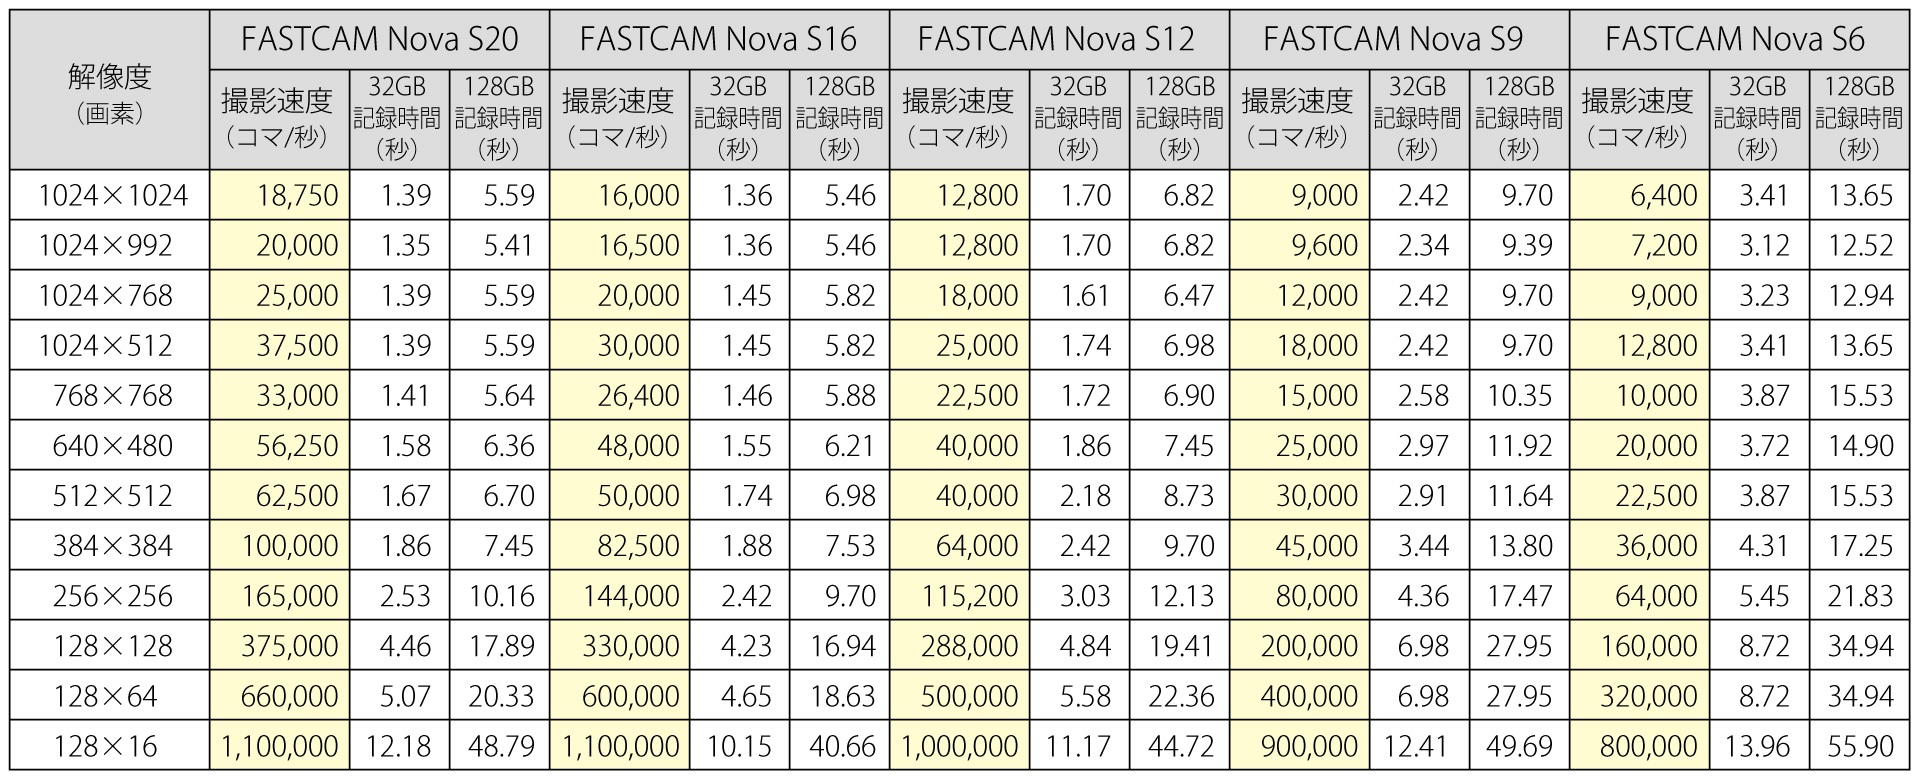 株式会社 フォトロン FASTCAM Nova S シリーズ 5 モデル 撮影性能画像 